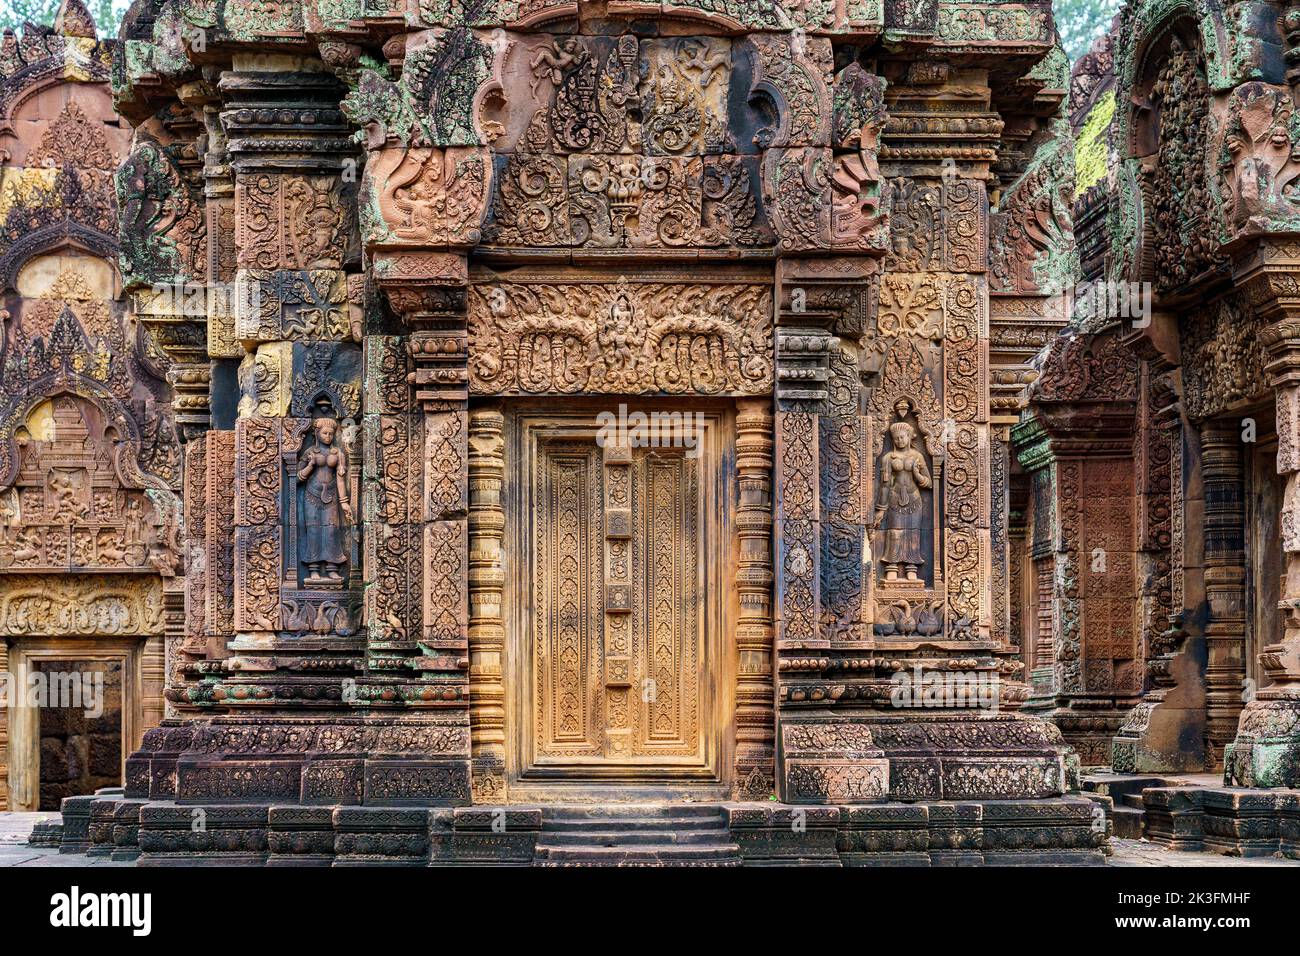 Camboya. Siem Riep. El parque arqueológico de Angkor. Banteay Srei templo hindú del siglo 10th dedicado a Shiva. Detalle de la arquitectura Foto de stock